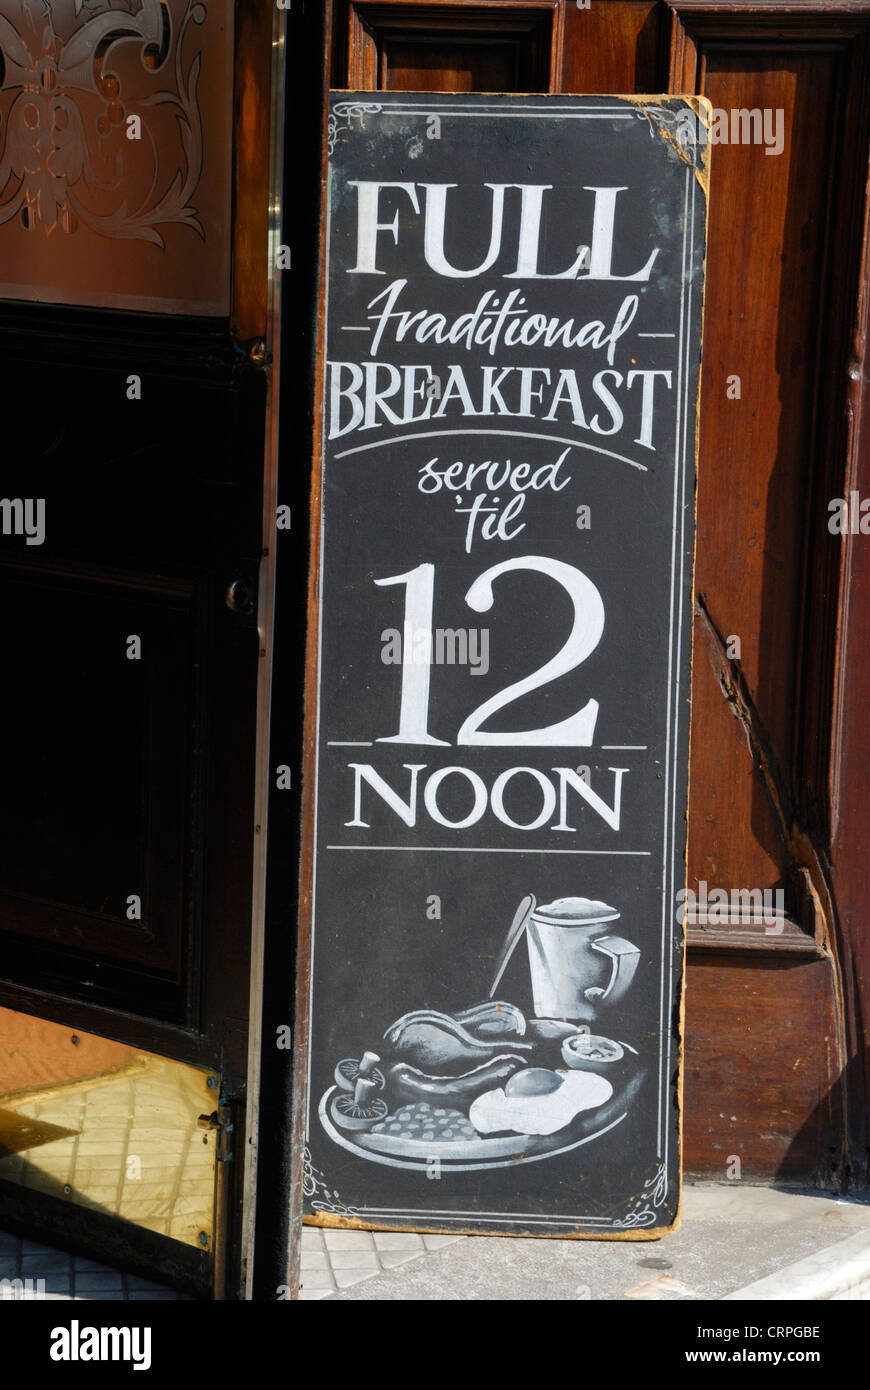 Firmar fuera de un pub promover un "desayuno completo tradicional'. Foto de stock